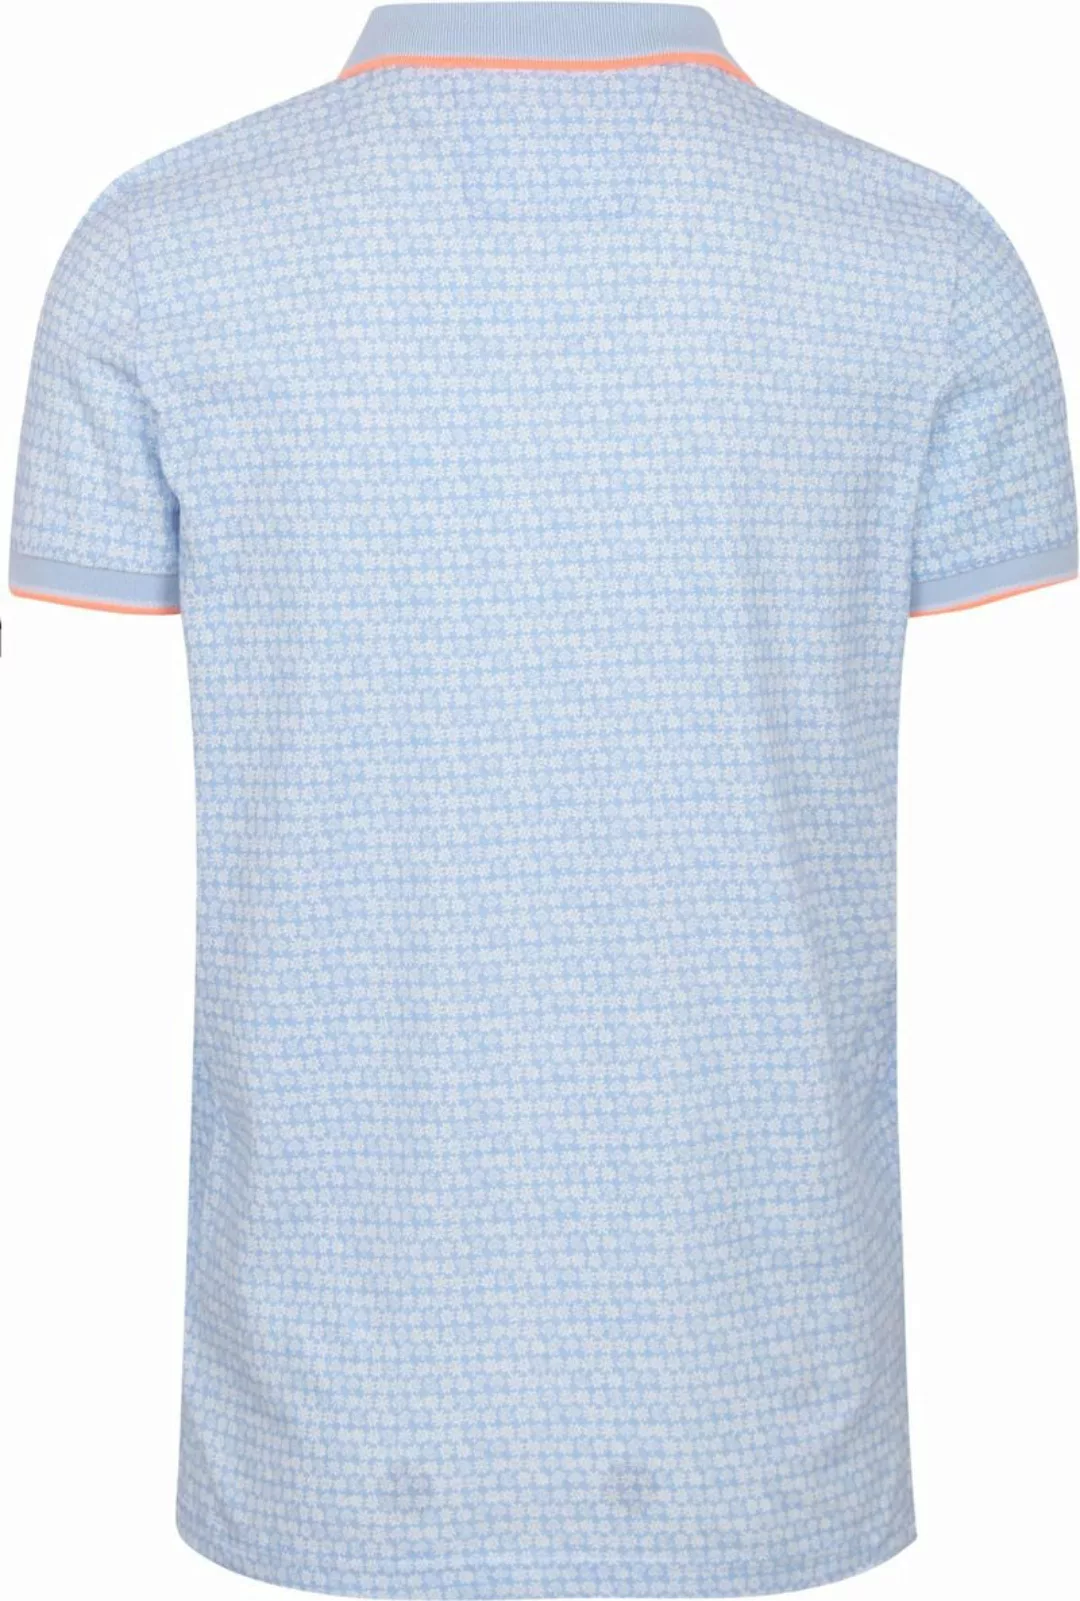 NZA Poloshirt Tristan Hellblau - Größe L günstig online kaufen